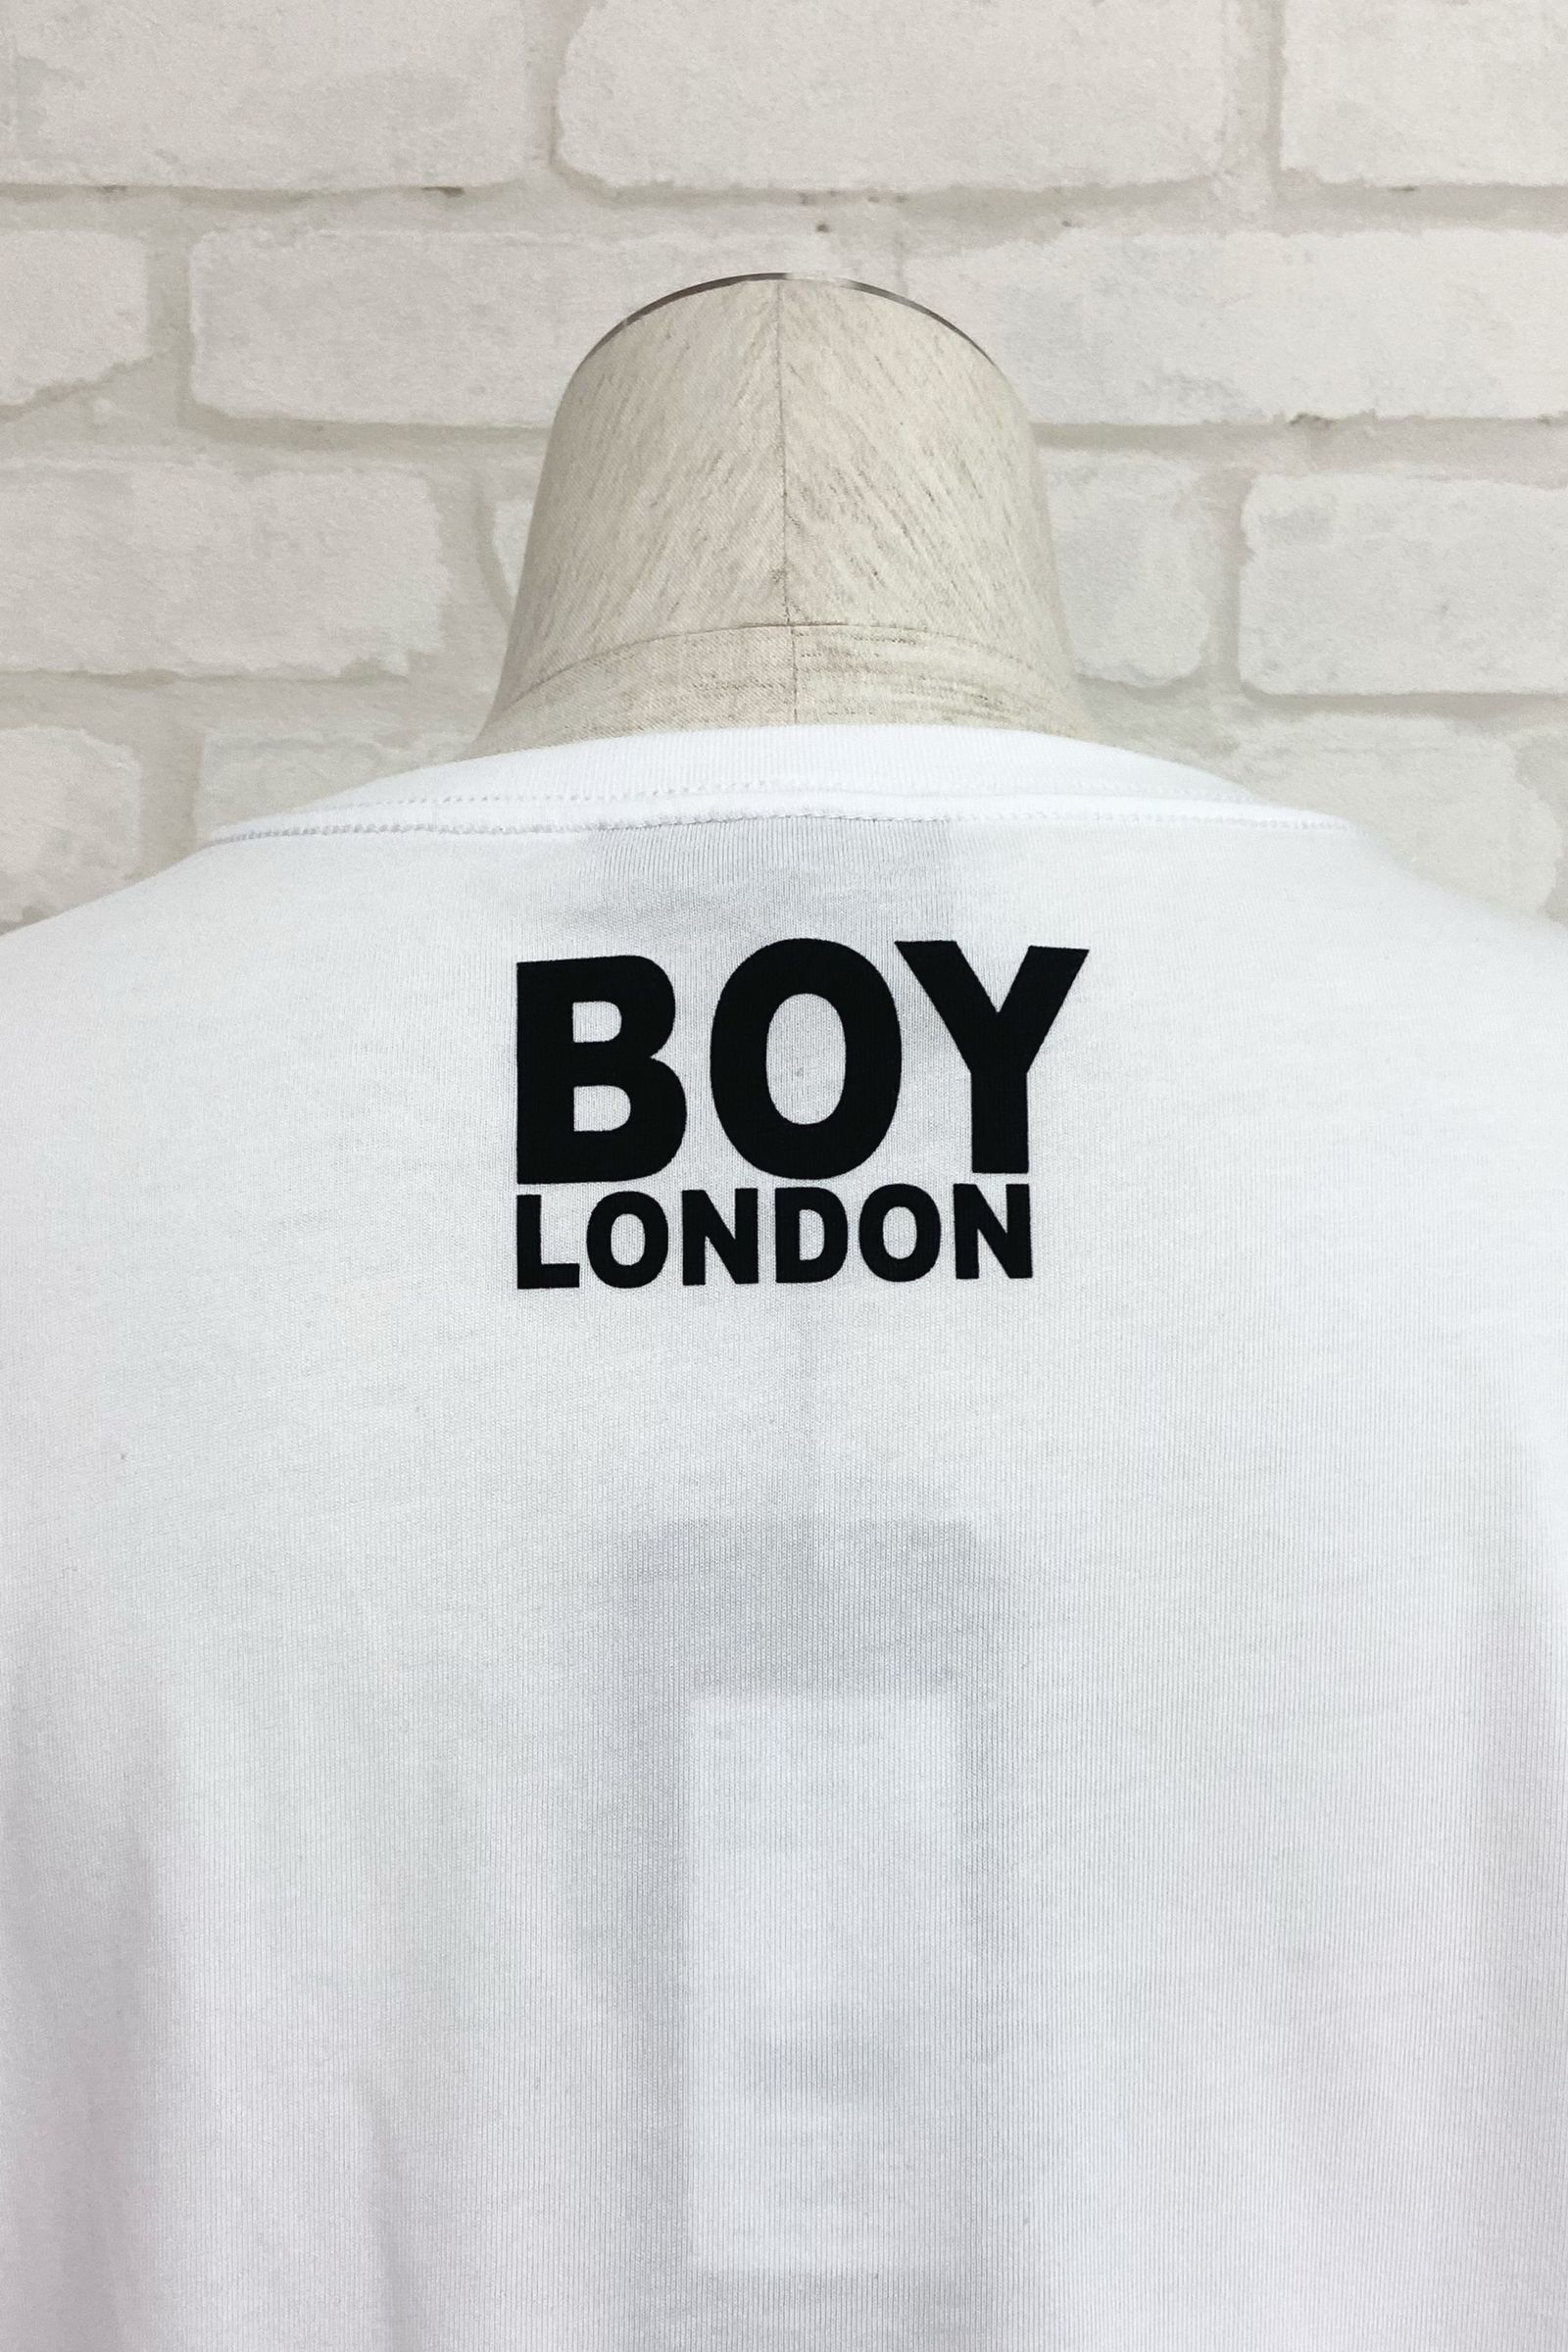 BOY LONDON - Tokyo BOY EAGLE T-SHIRTS / White 【BOY LONDON】 | BRYAN